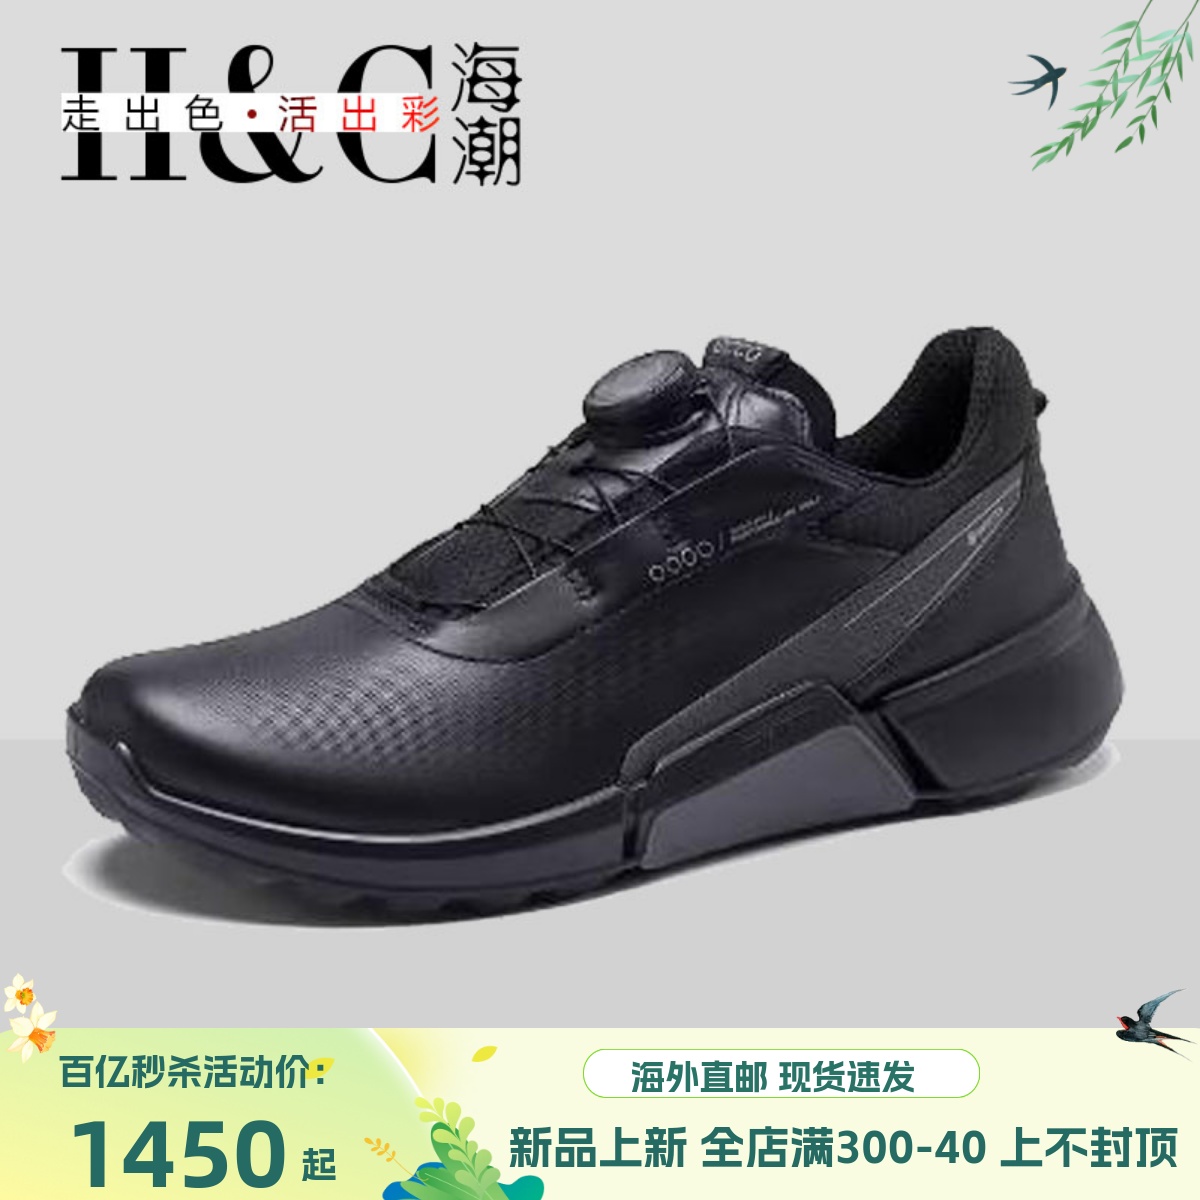 ECCO爱步高尔夫女士球鞋秋舒适牛皮防水透气运动鞋108613海外代购